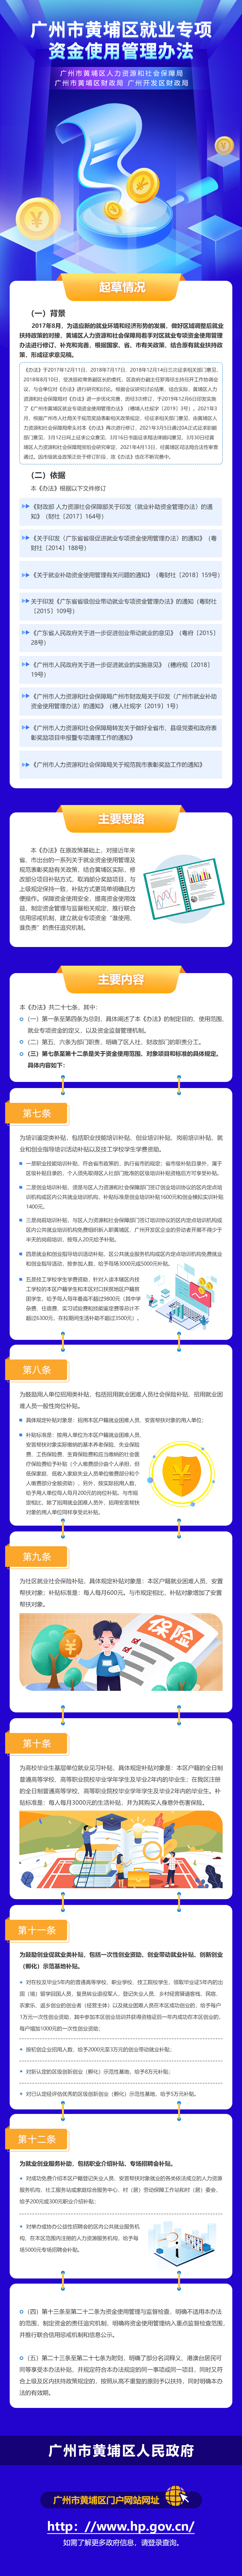 《广州市黄埔区就业专项资金使用管理办法》解读材料(1).jpg